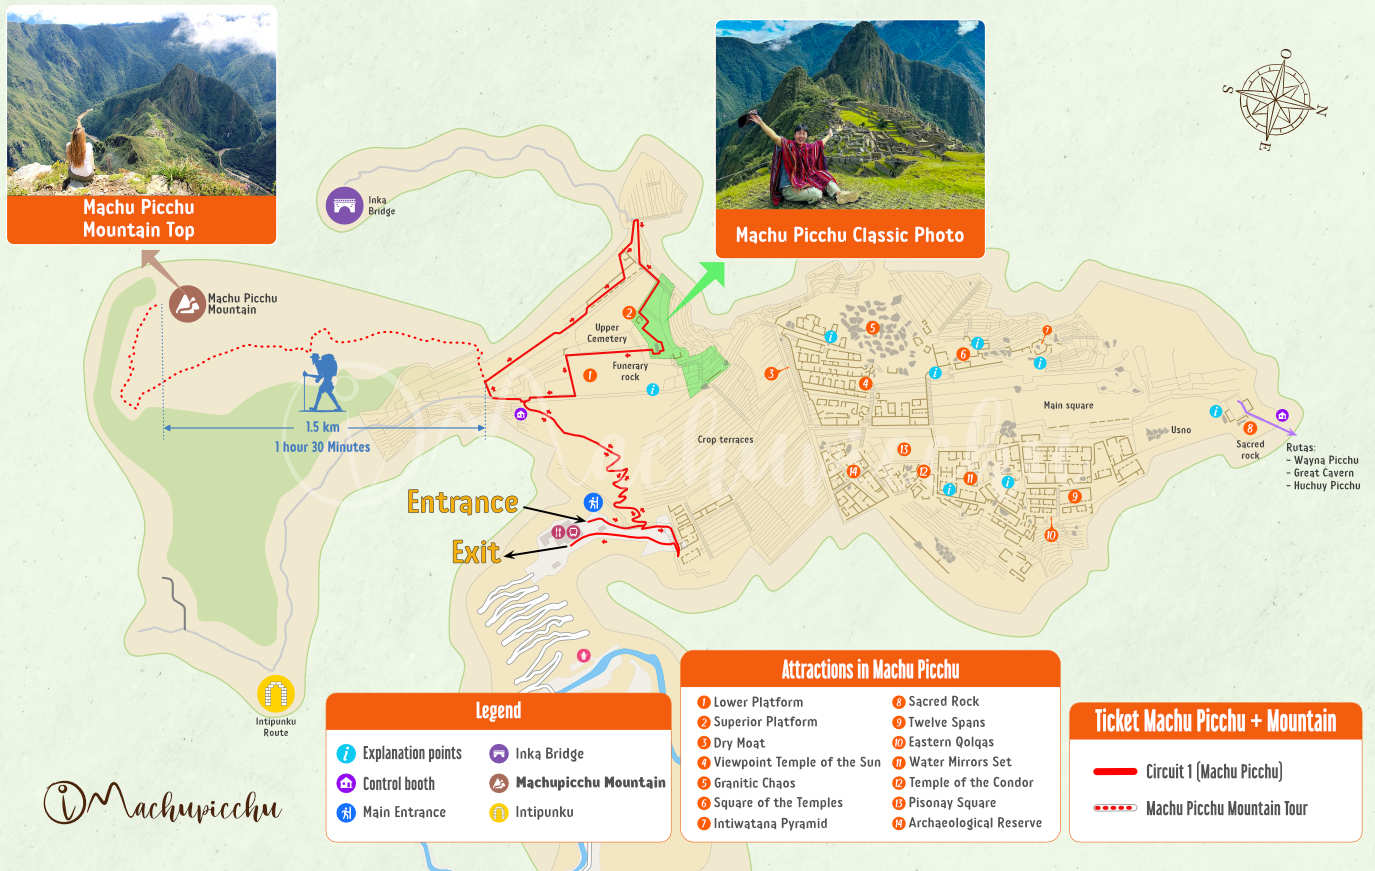 Map of Machu Picchu + Mountain circuit